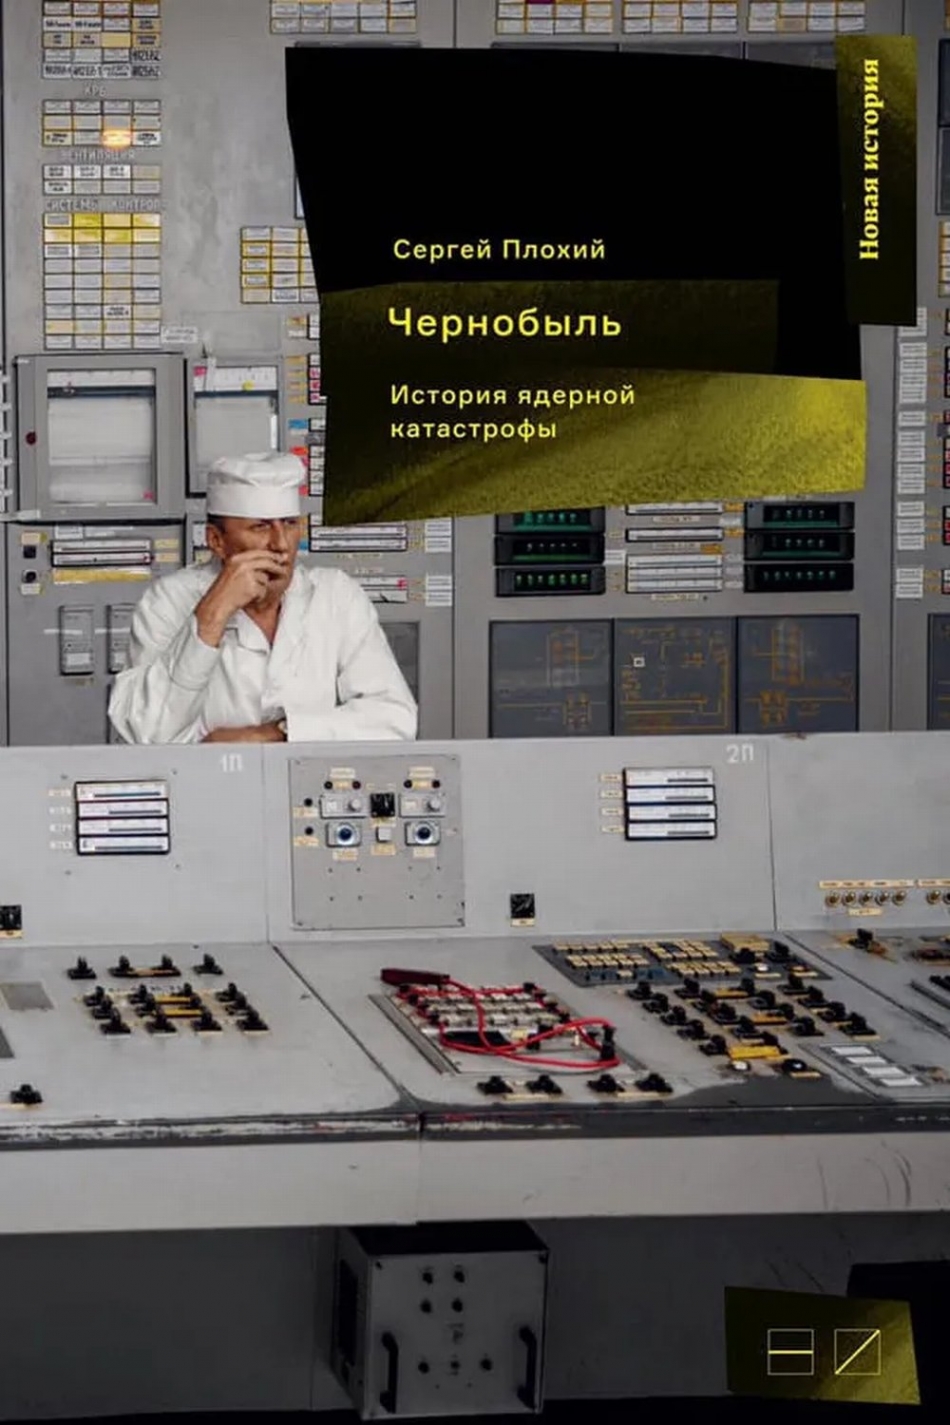 Плохий С. Н. Чернобыль: История ядерной катастрофы 